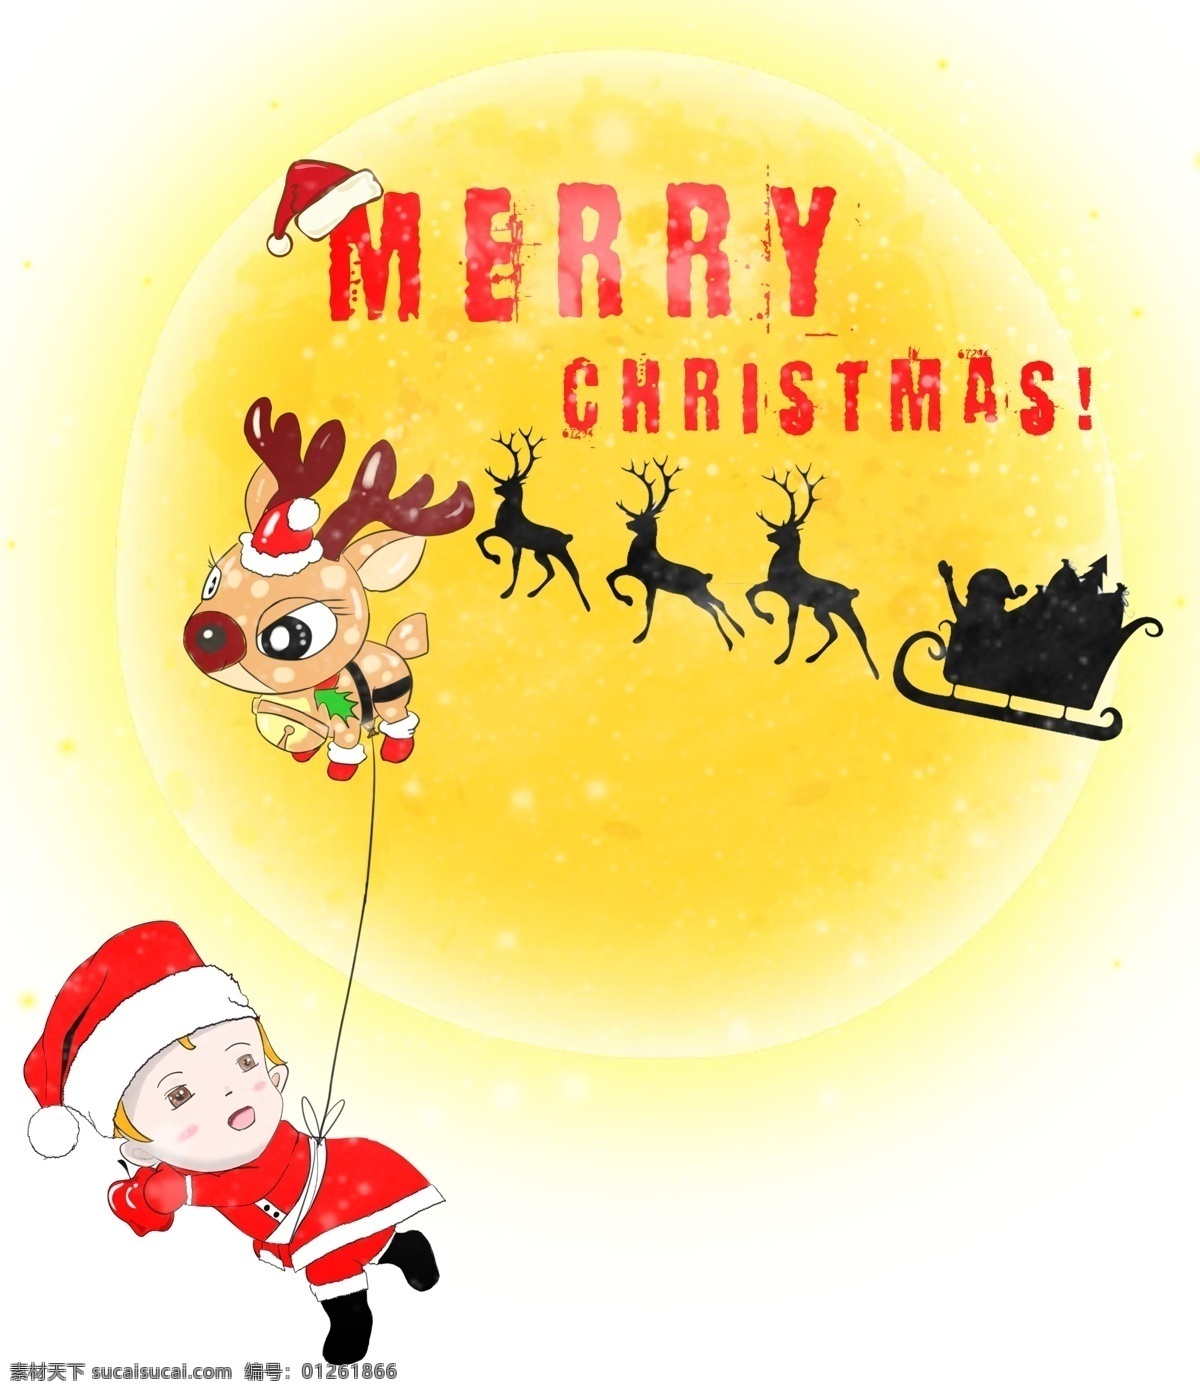 手绘 卡通 圣诞老人 雪橇 小孩 宝宝 儿童 麋鹿 气球 圣诞节 平安夜 苹果 圣诞帽 节日装扮 送礼 月亮 雪花